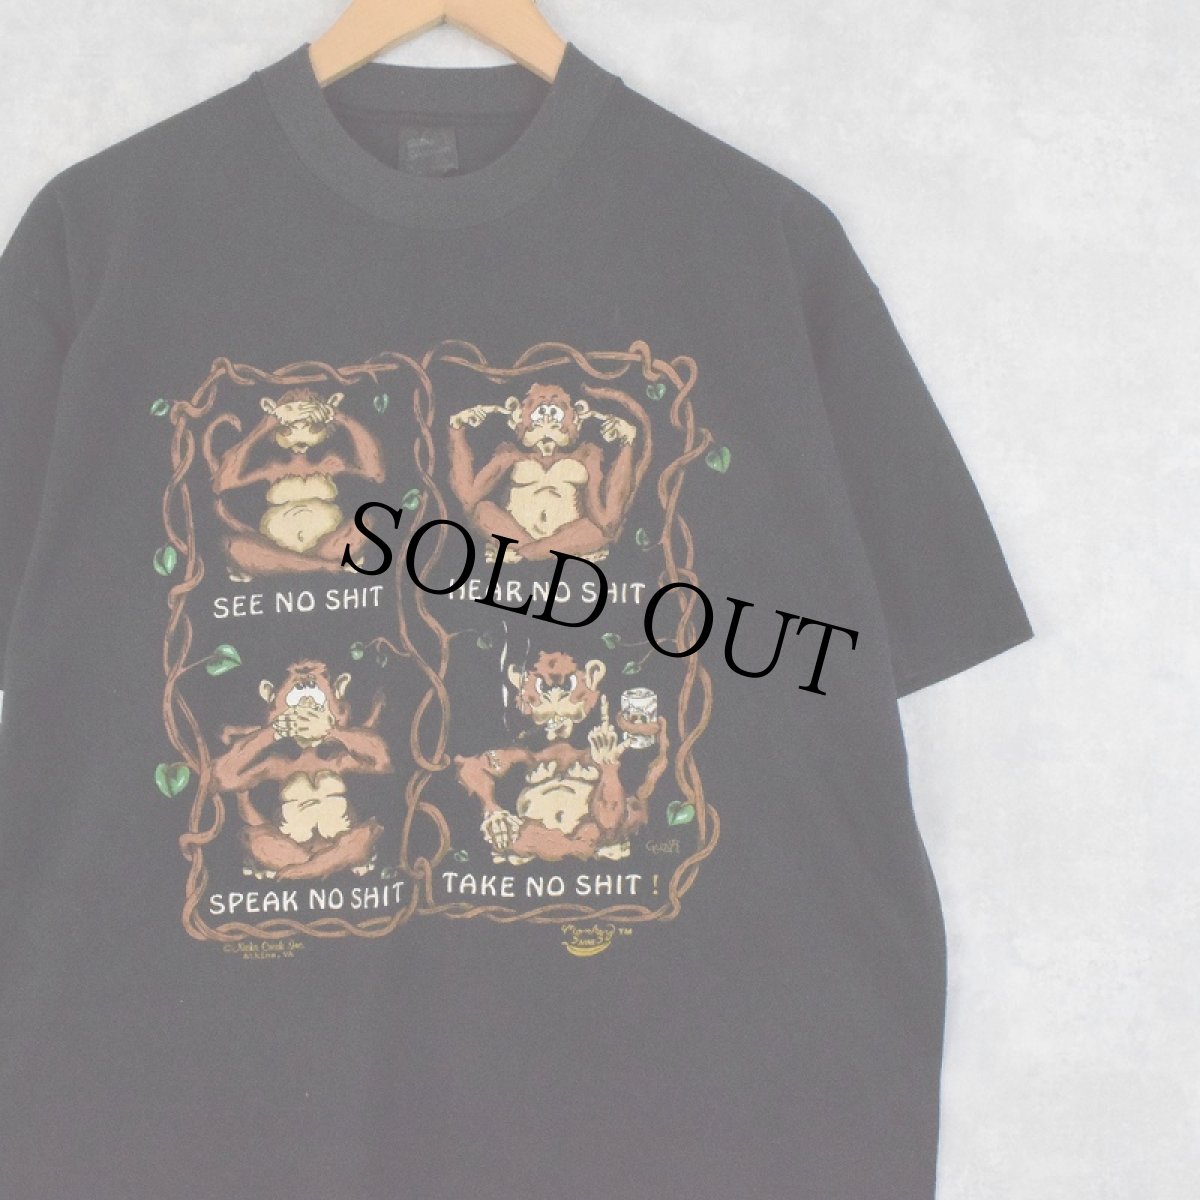 画像1: 90's USA製 "Monkey SHINES" モンキーイラストTシャツ L (1)